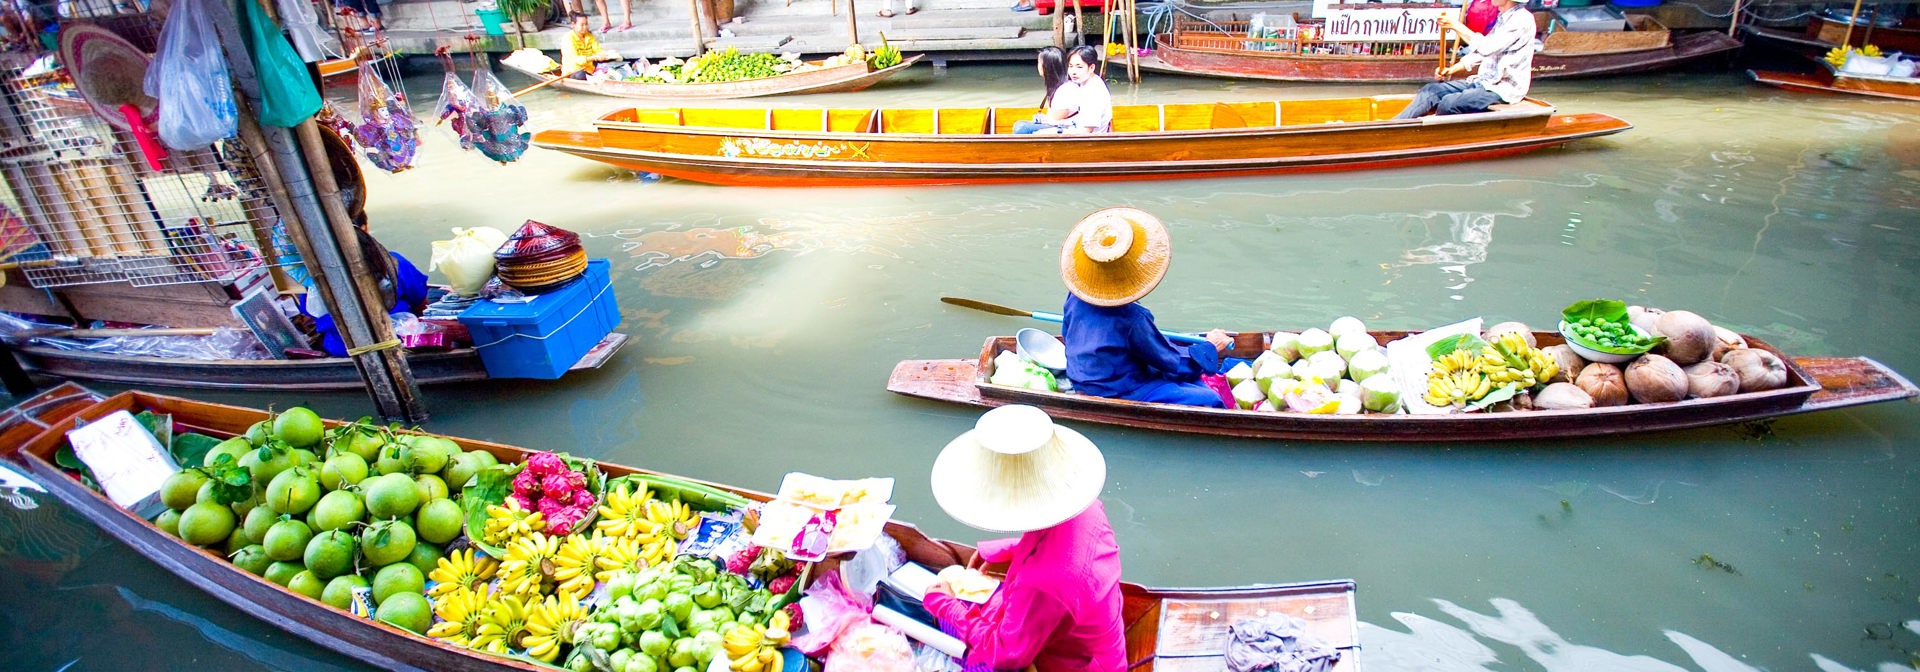 thailand - bangkok_flydende marked_01